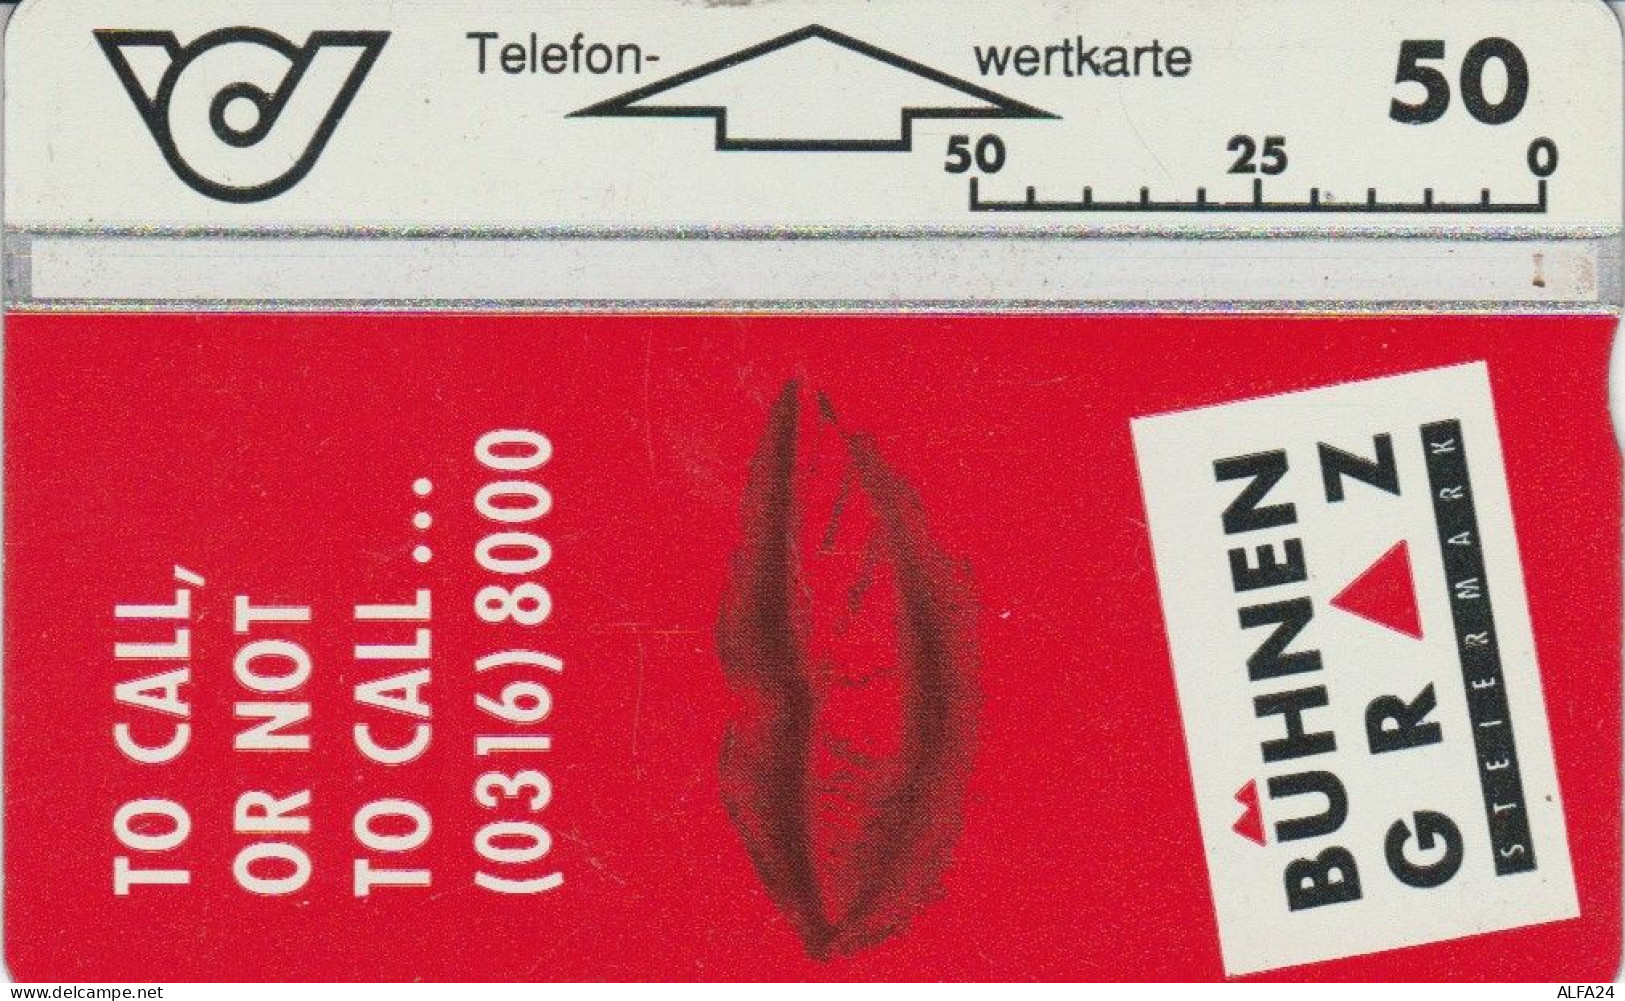 PHONE CARD AUSTRIA (CK6074 - Oesterreich